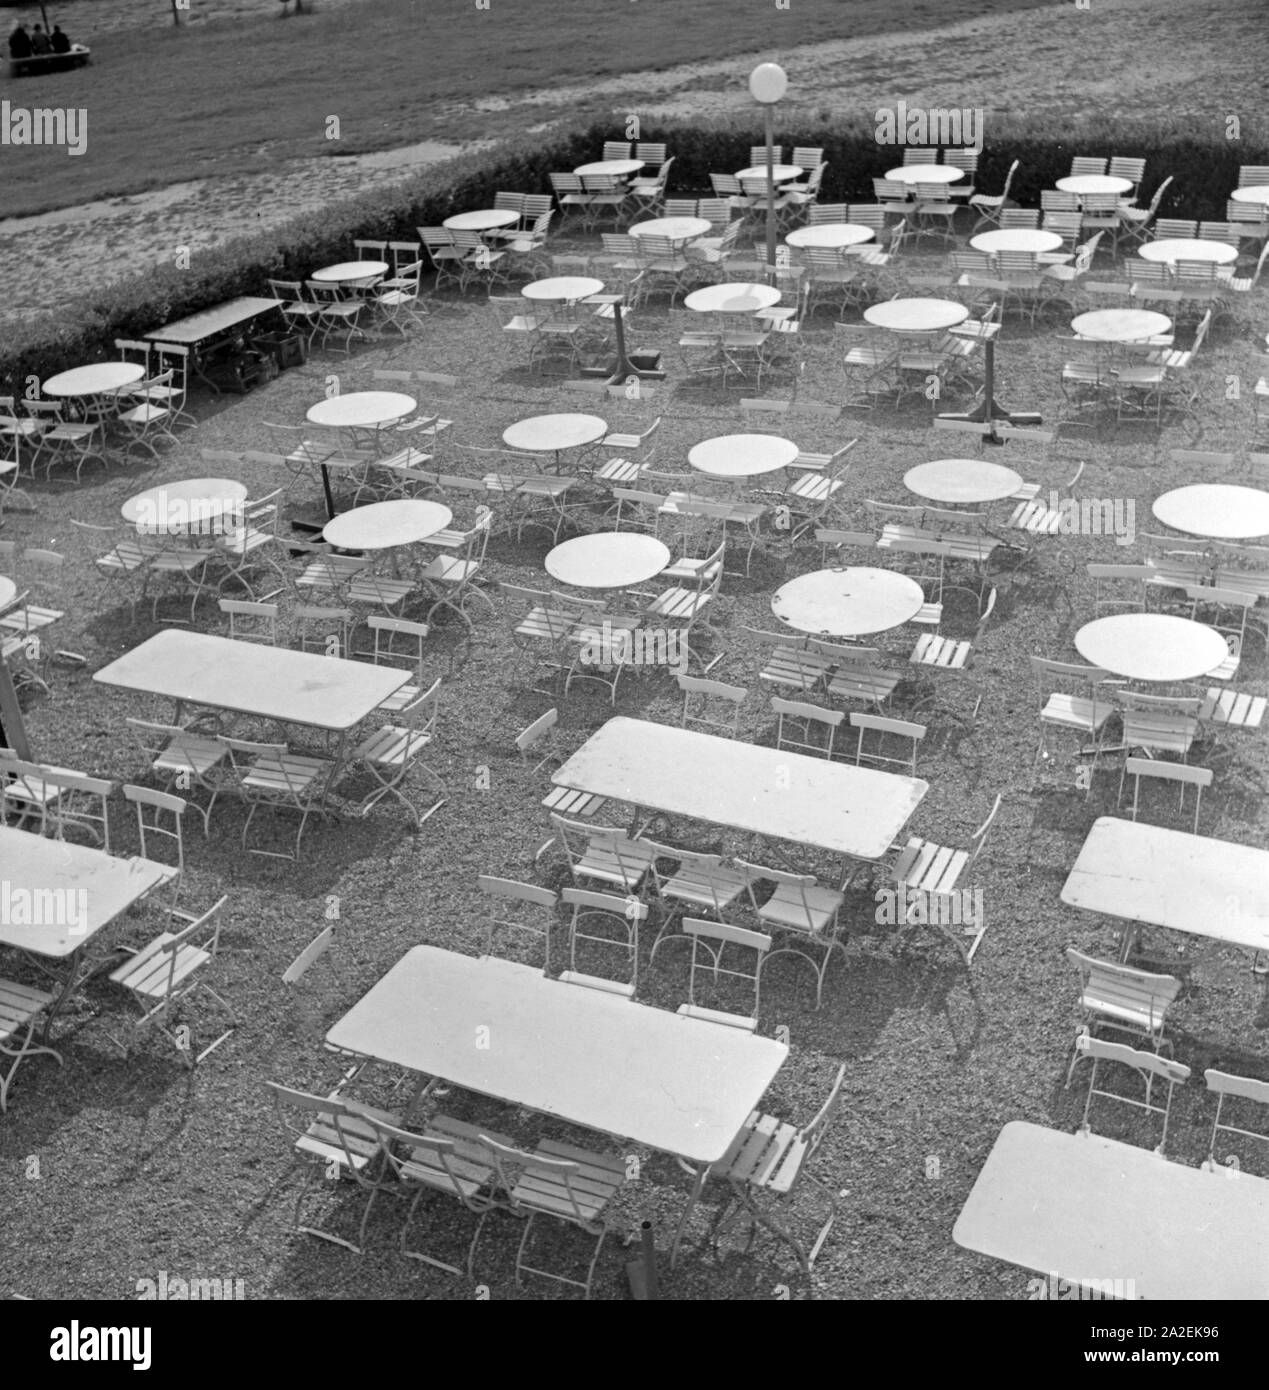 Tische und Stühle einer Außengastronomie bei Schloß Solitude en Stuttgart, Alemania 1930er Jahre. Mesas y sillas de un restaurante al aire libre en soledad castillo en Stuttgart, Alemania, 1930. Foto de stock